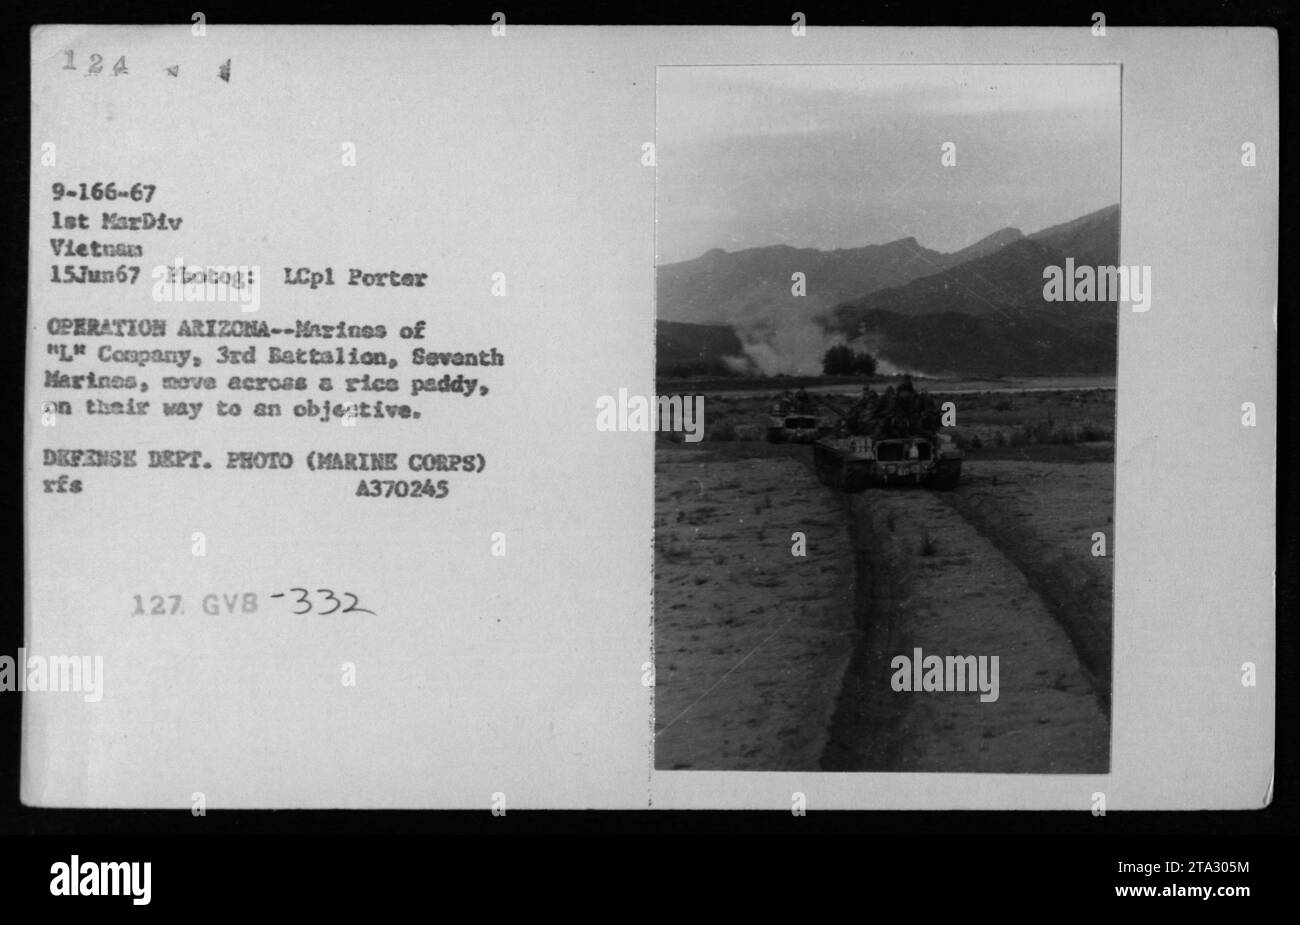 Les Marines de la compagnie 'l', 3e bataillon, 7e Marines, se déplacent à travers un rizier pendant l'opération Arizona le 15 juin 1967. La photographie, prise par le Lcpl porter, montre des chars déployés par la 1e Division des Marines au Vietnam. Il s'agit d'une photographie officielle enregistrée par le département de la Défense, section corps des Marines. Référence de l'image : A370245, 1e MarDiv, 127. GVB-332. Banque D'Images